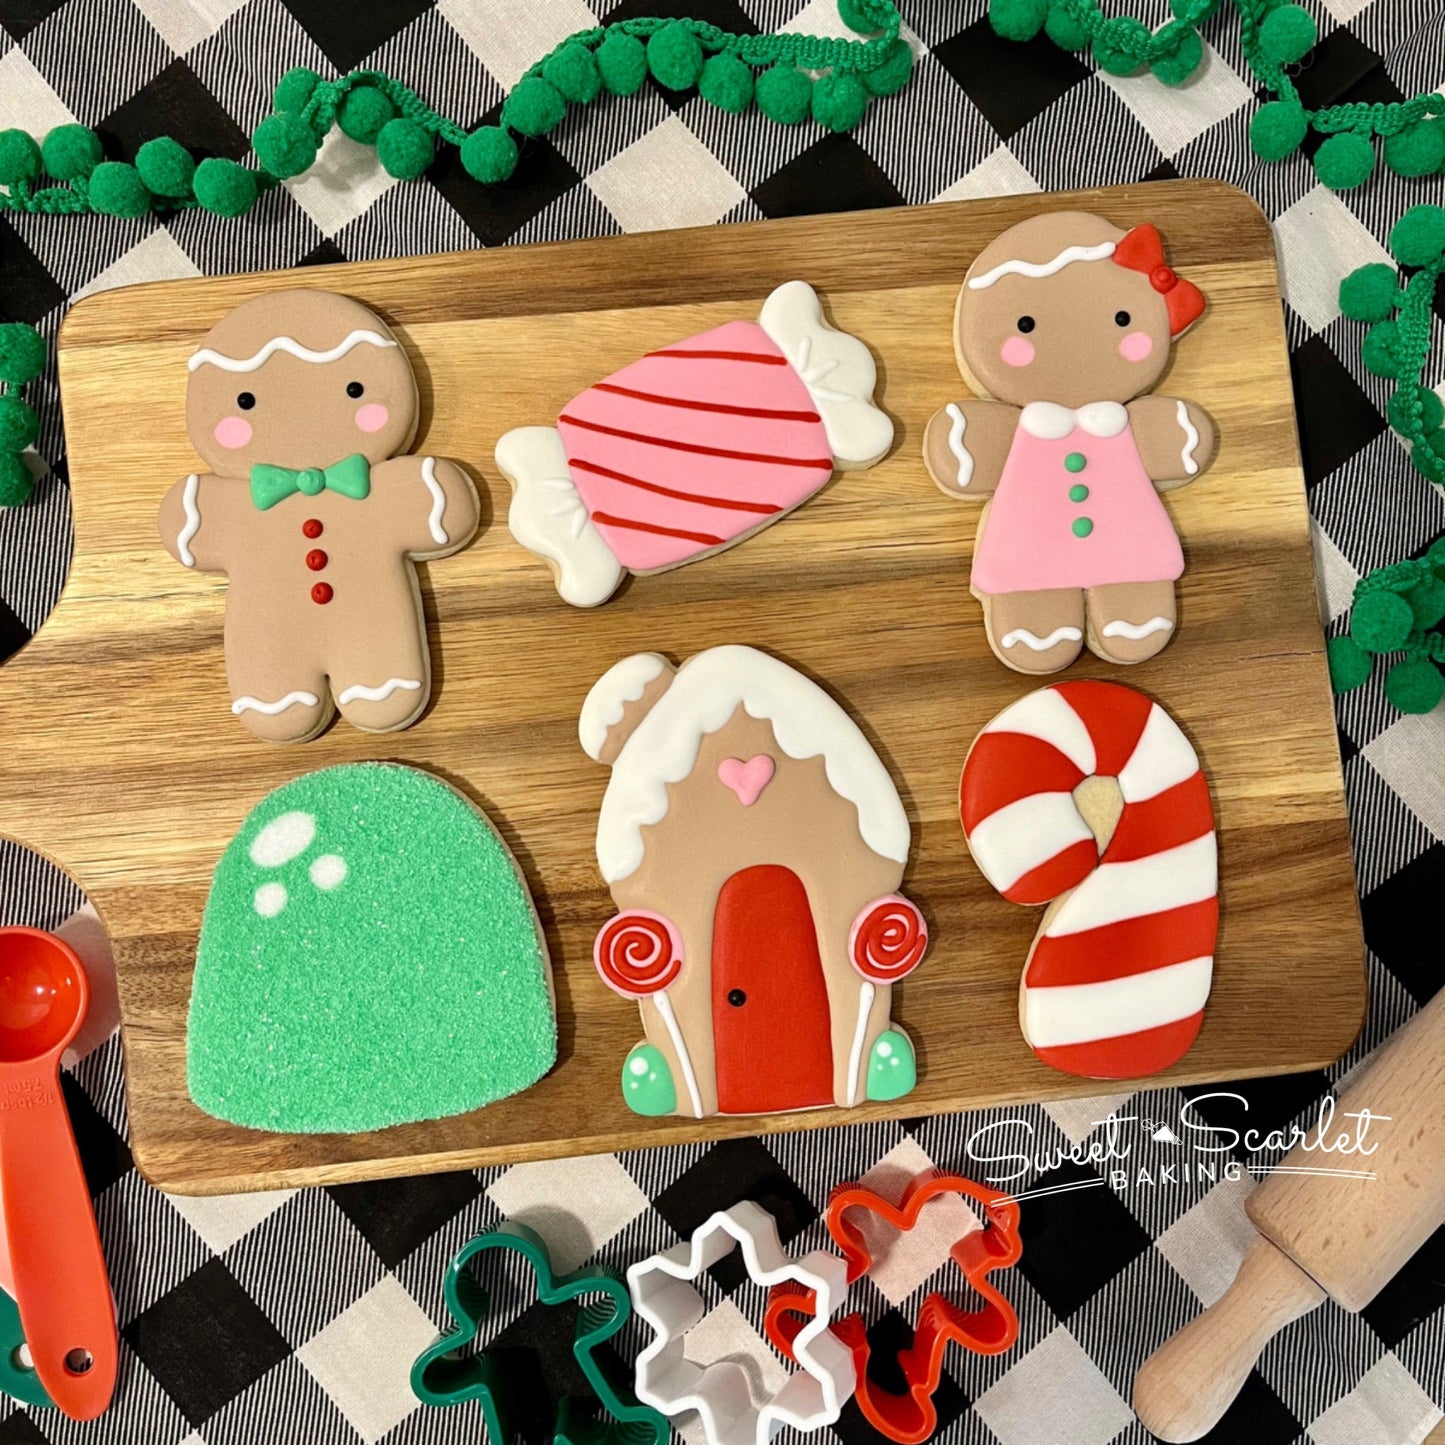 Gingerbread2 Adult Beginner Cookie Class - Sat 12/9 9:30 am